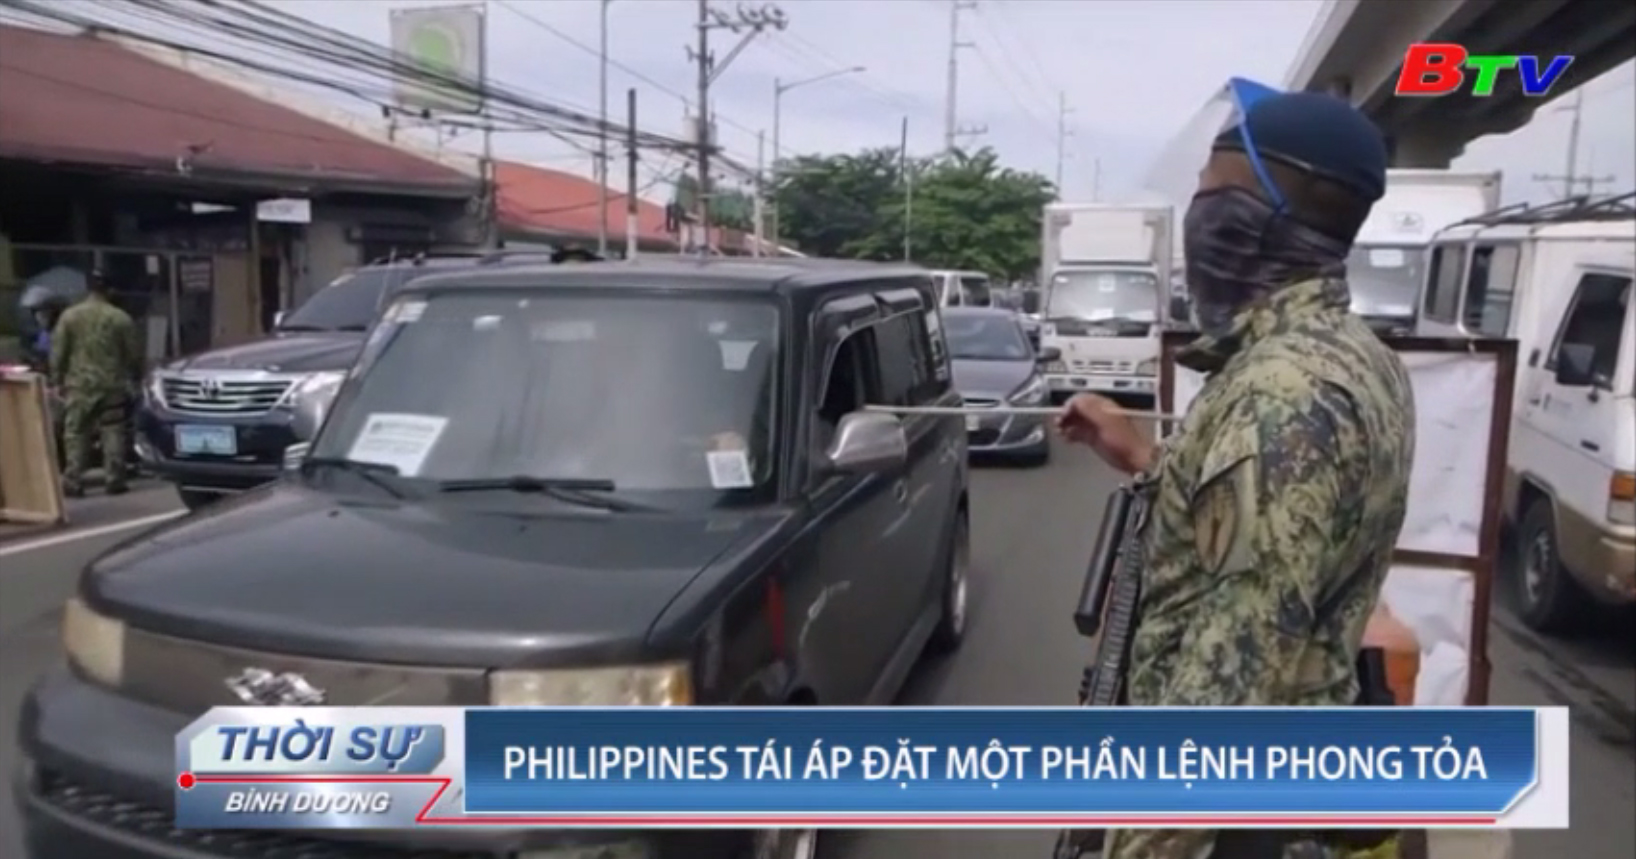 Philippines tái áp đặt một phần lệnh phong tỏa